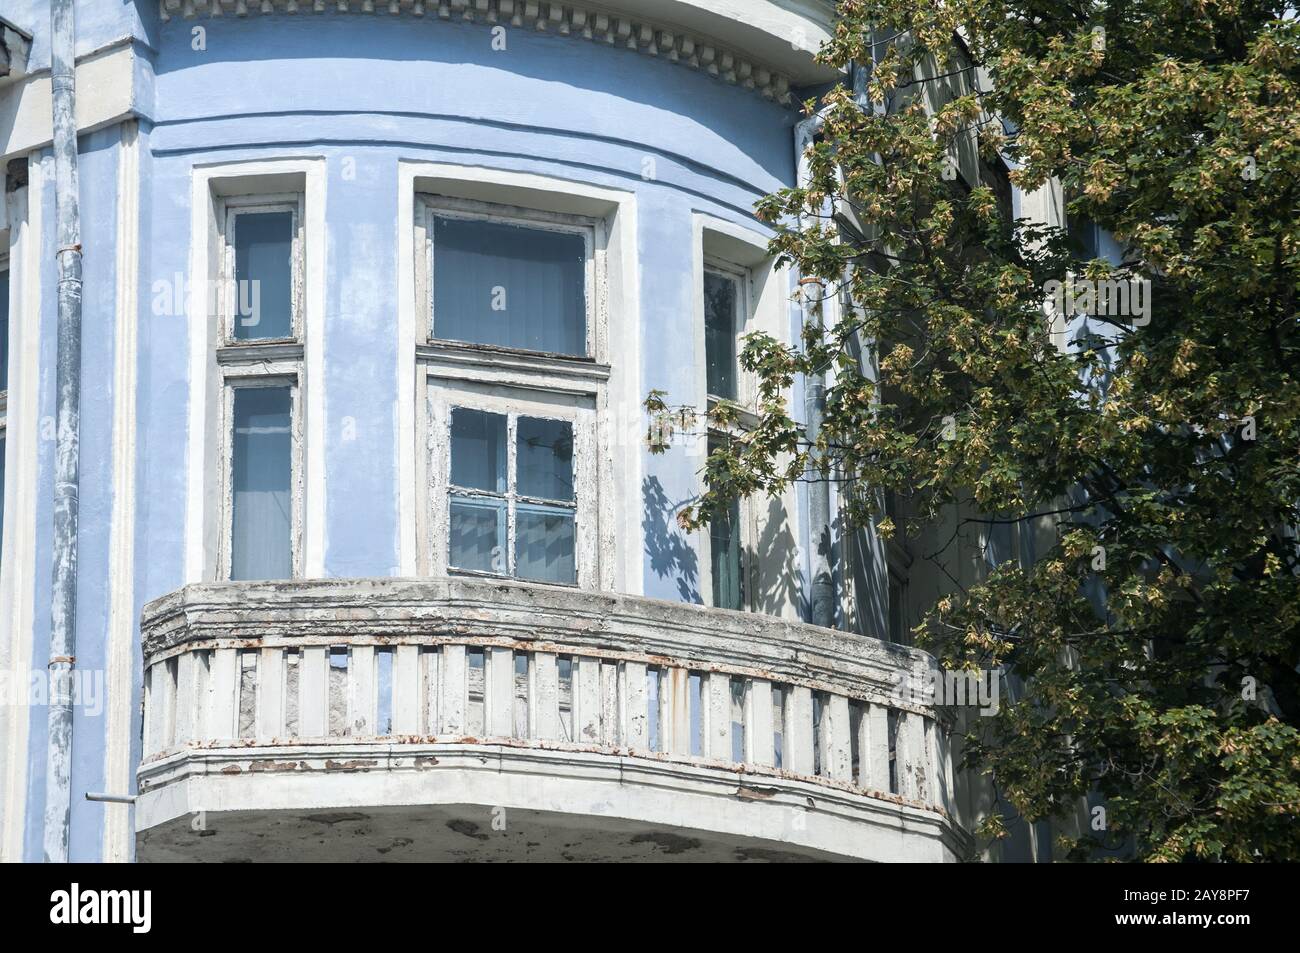 Fenster und Balkon der vernachlässigten alten Gebäude mit verblasst und ruinösen blau Putzfassade Stockfoto